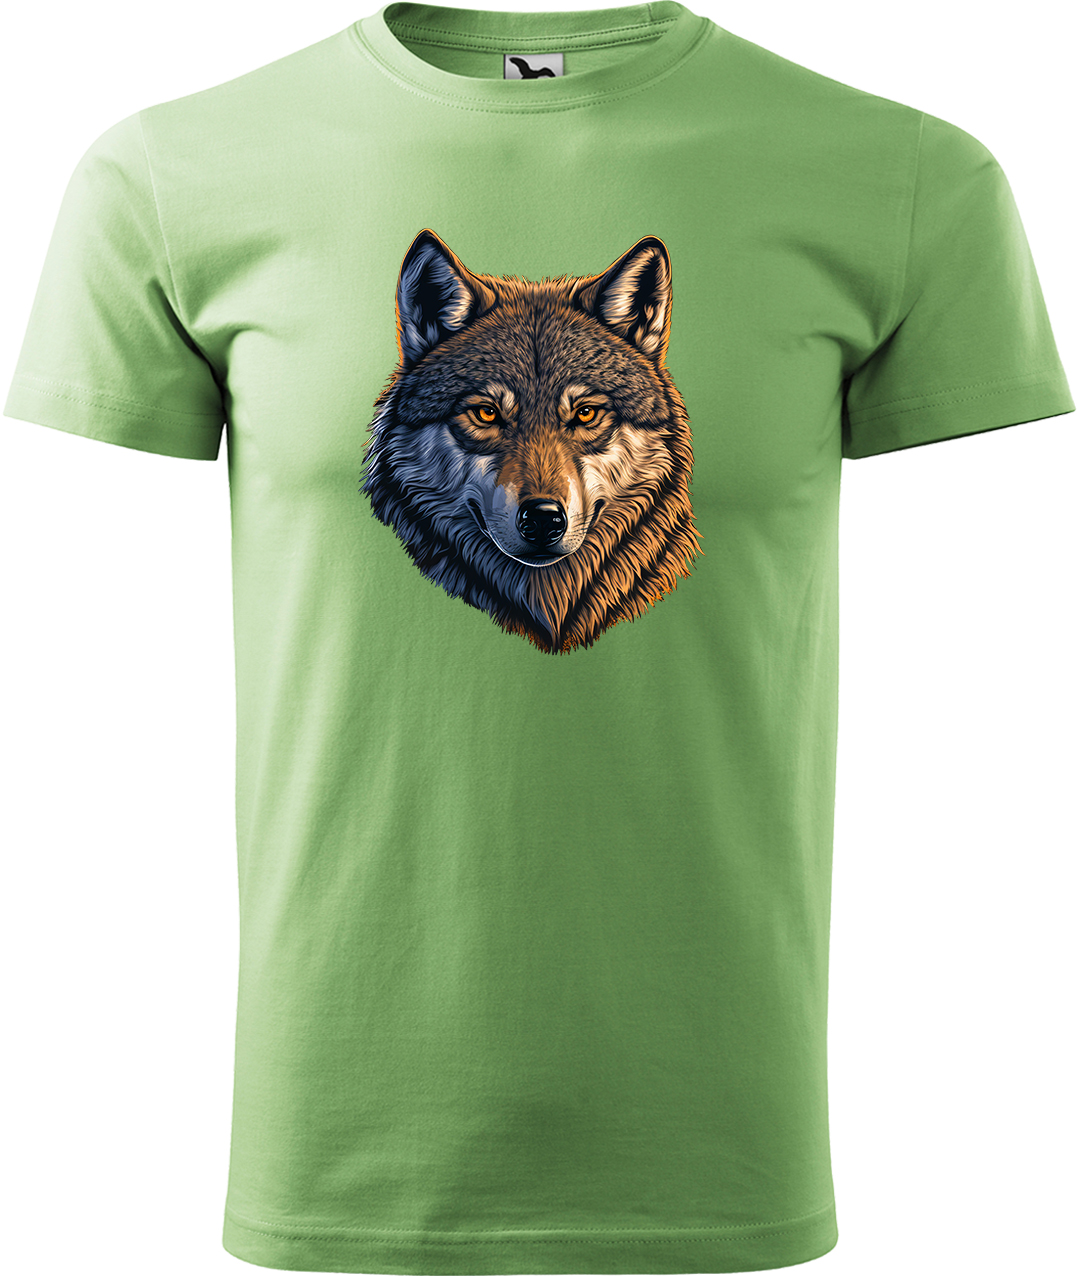 Pánské tričko s vlkem - Hlava vlka Velikost: XL, Barva: Trávově zelená (39), Střih: pánský